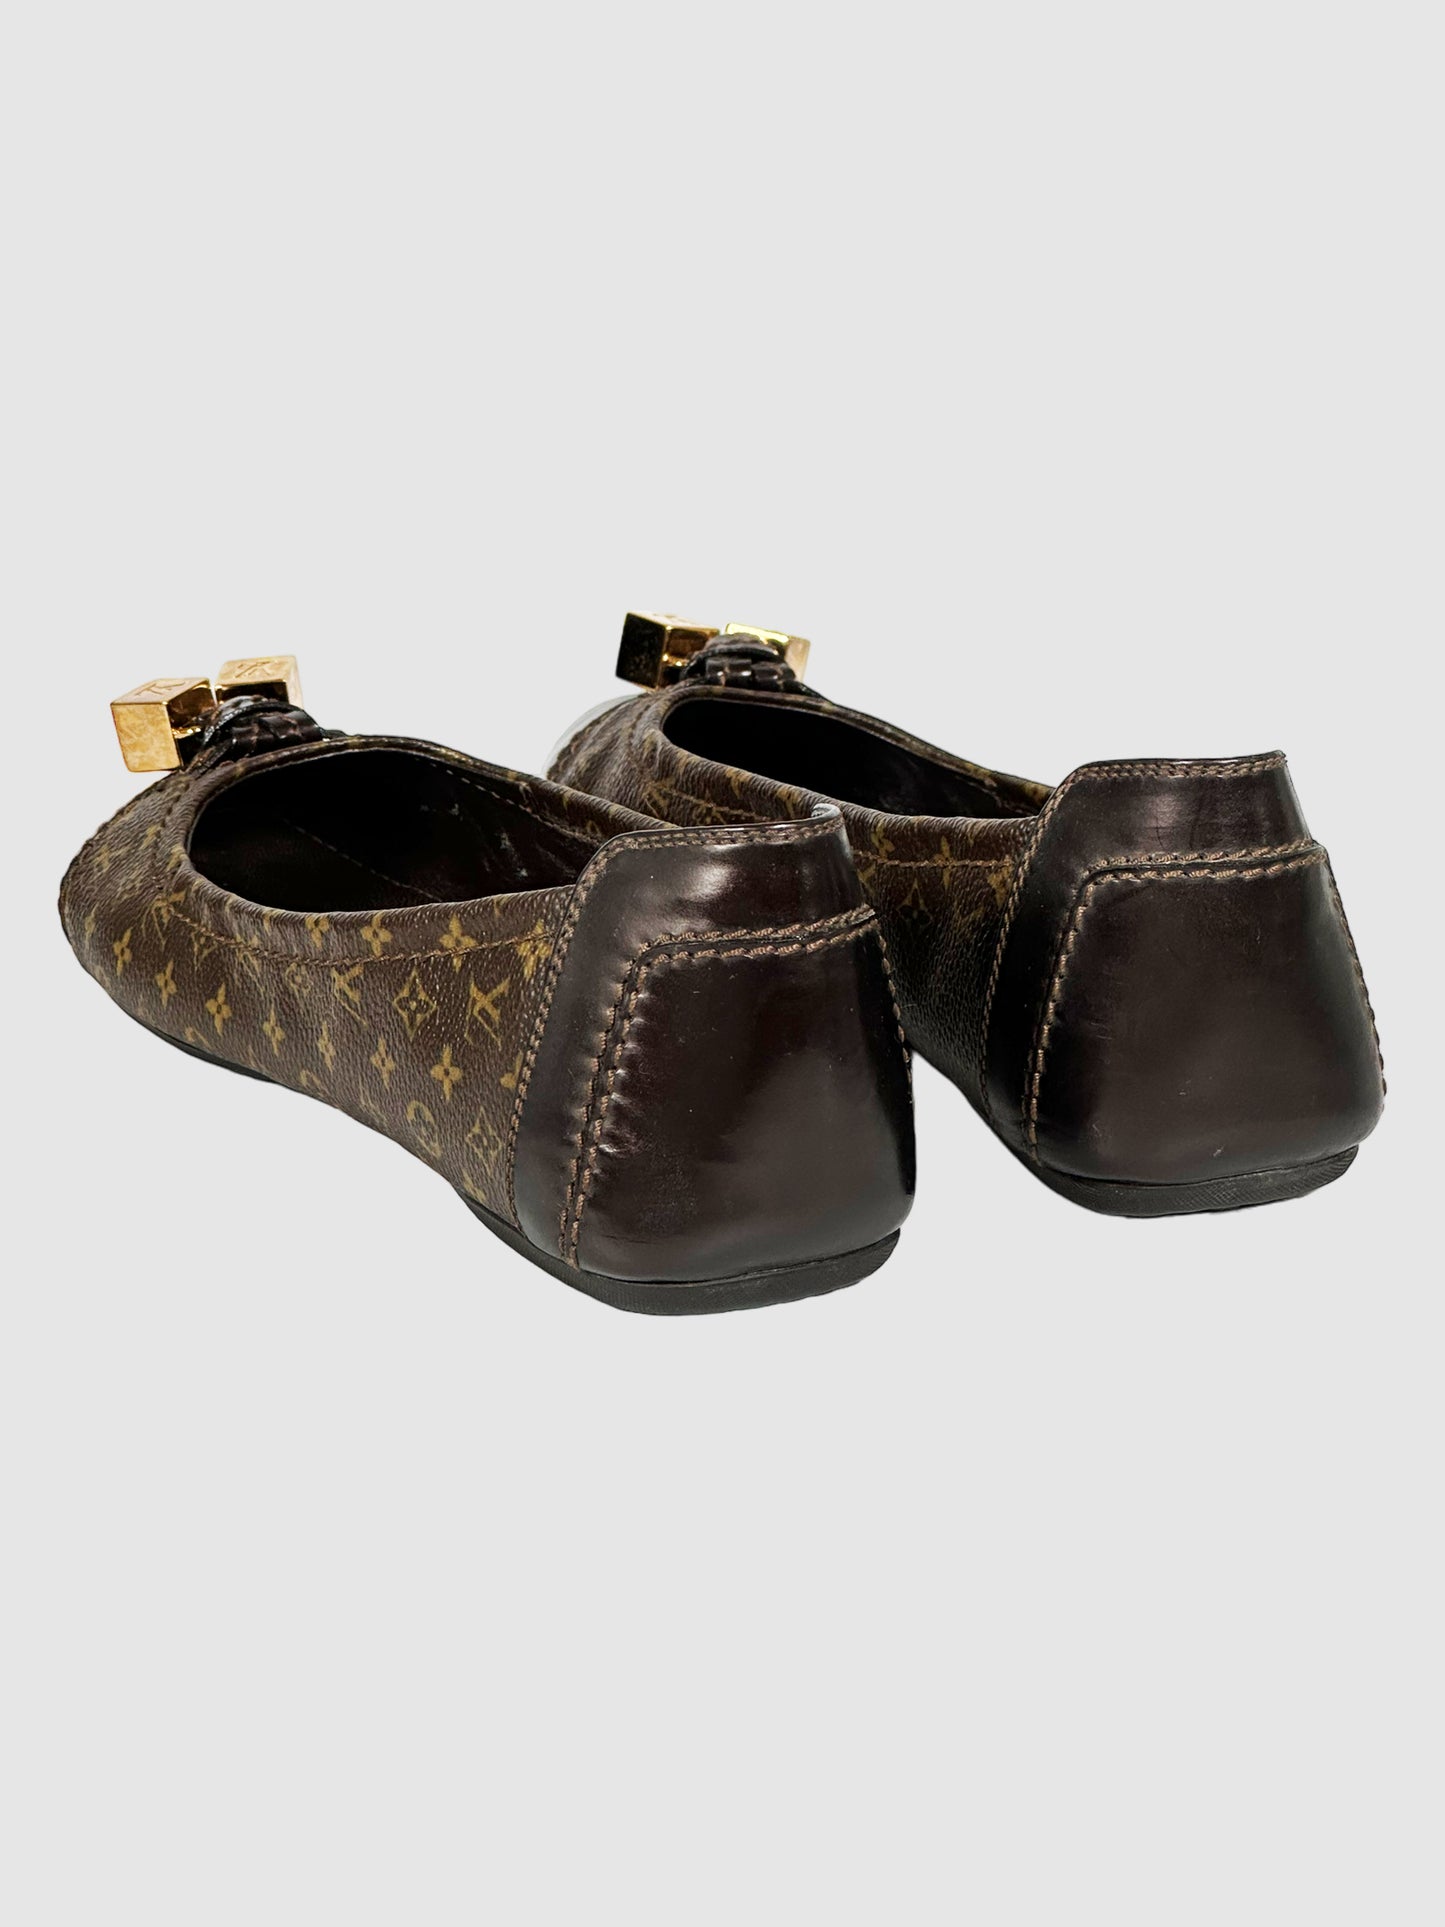 Louis Vuitton Monogram Leather Flats - Size 38